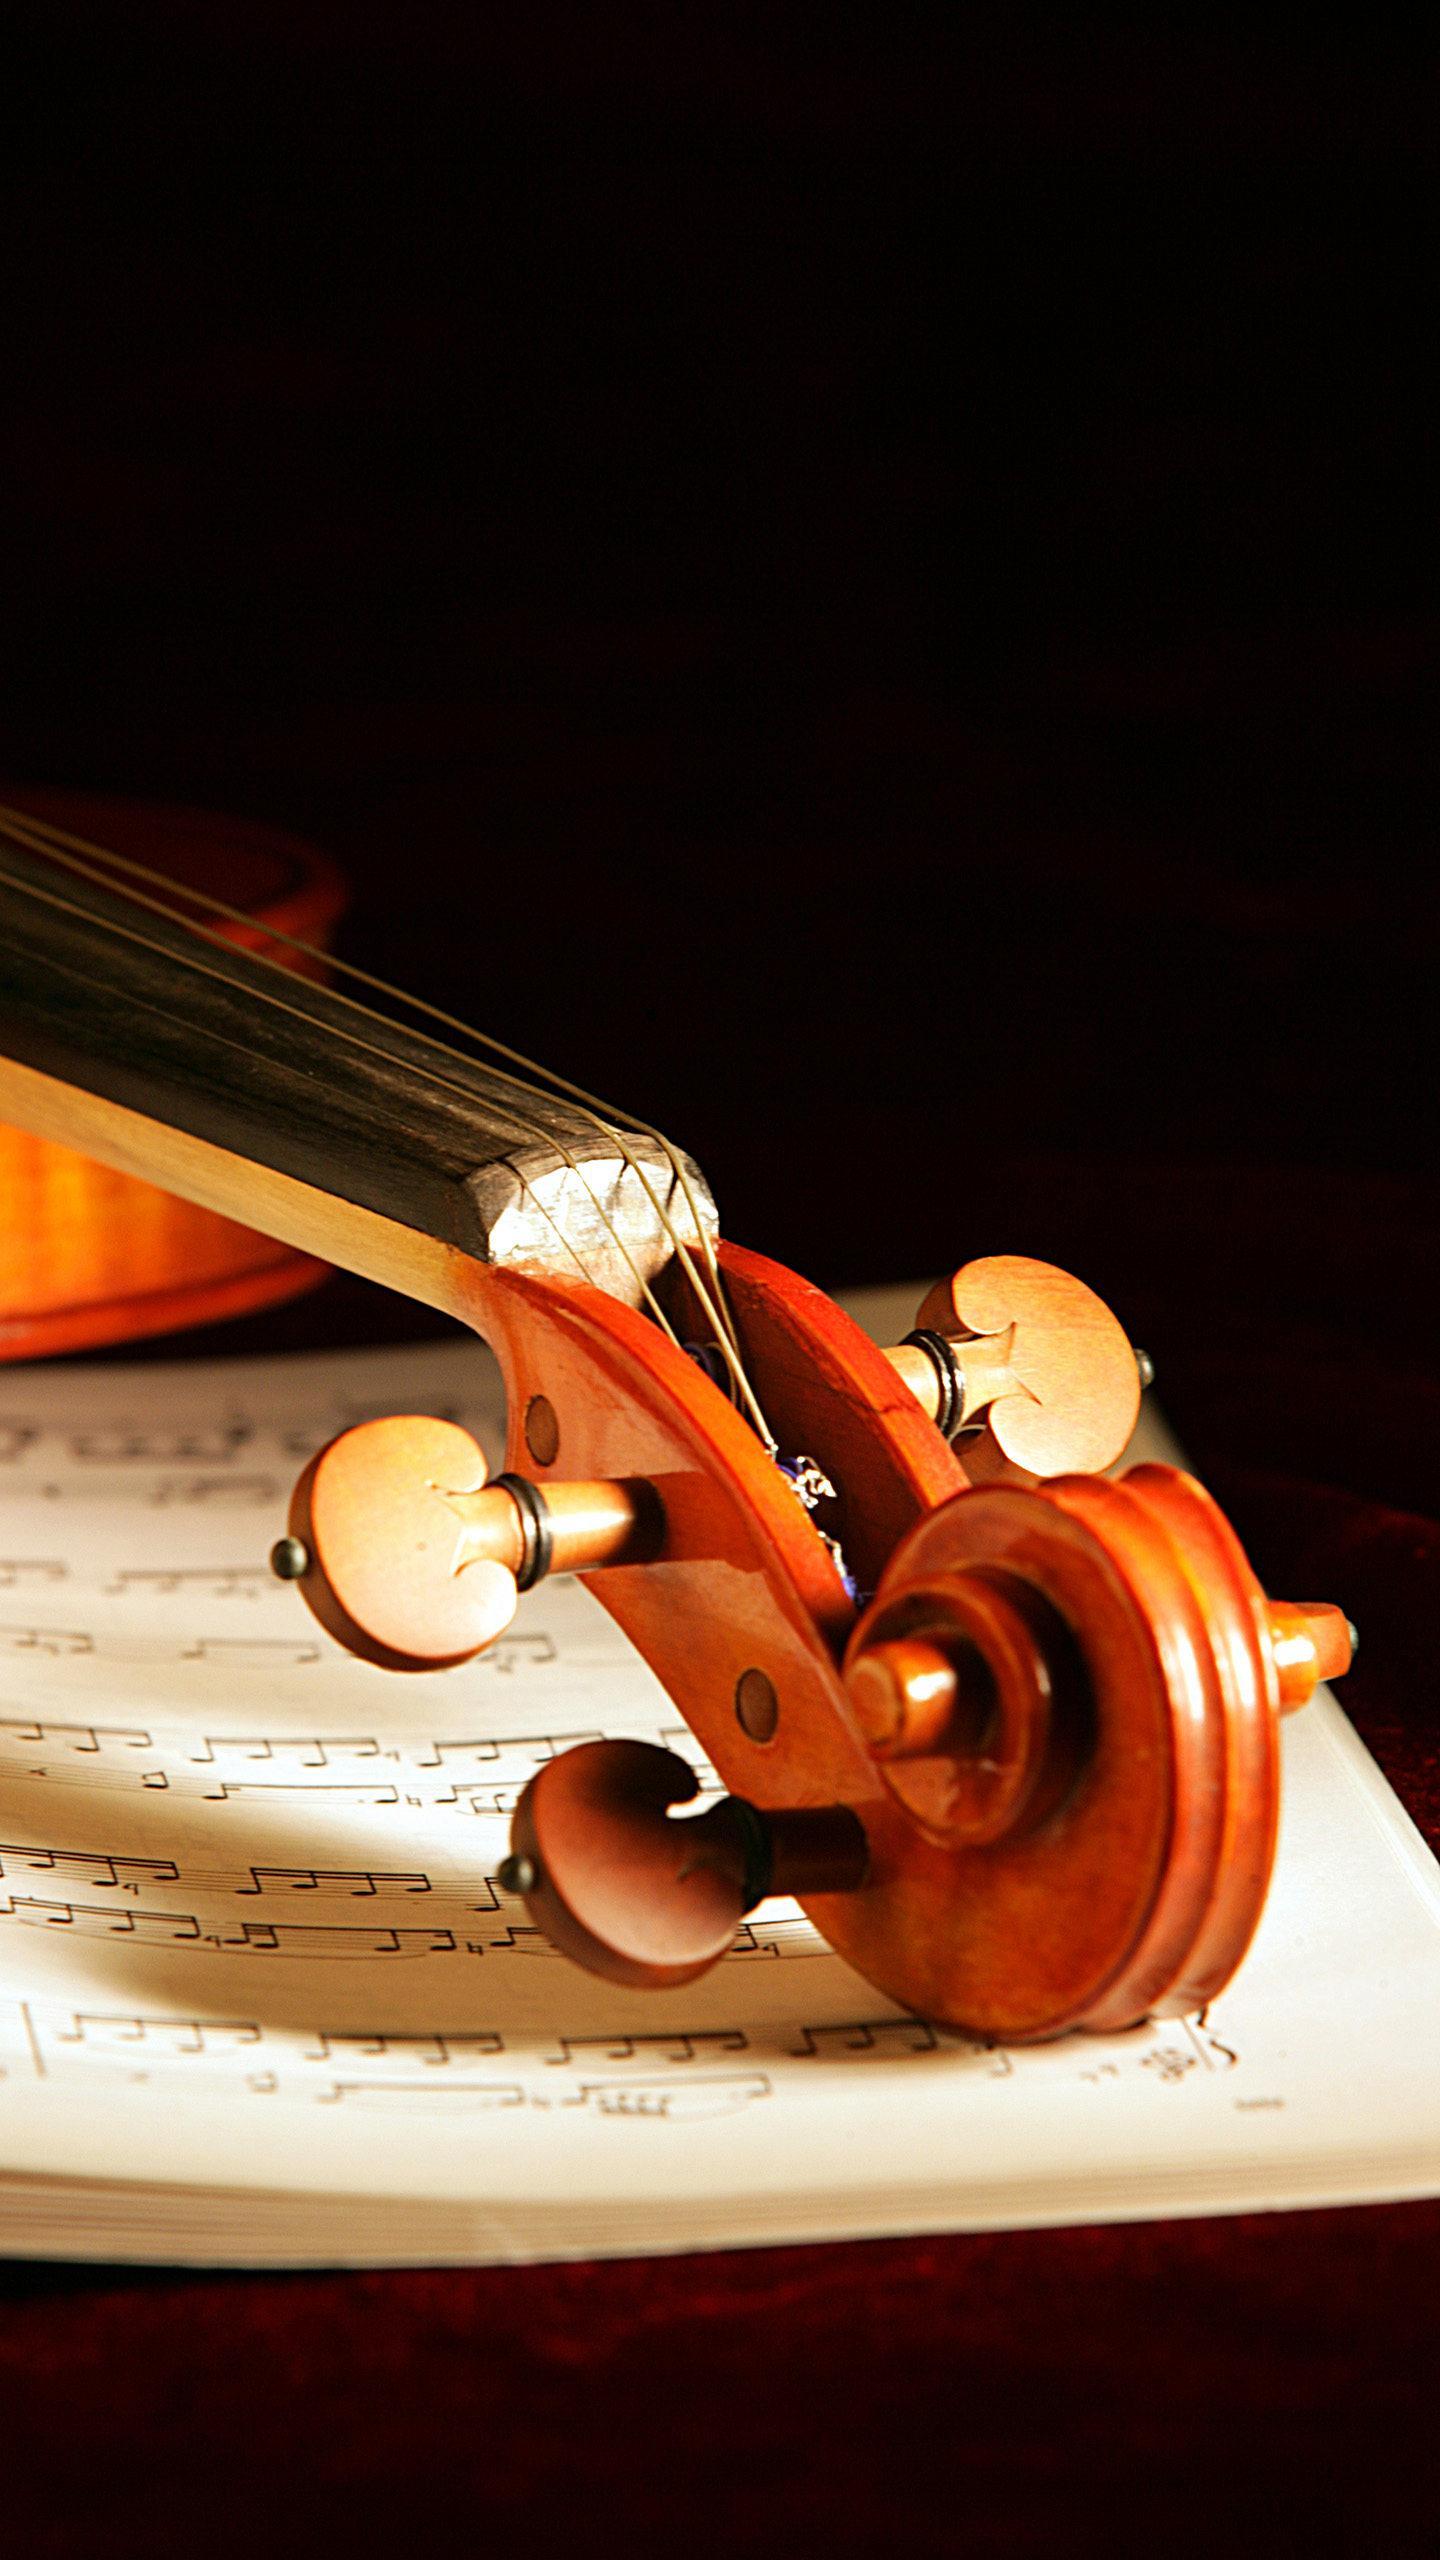 优秀的小提琴本身也是一件杰出的艺术品,每一个细节都散发着高雅的